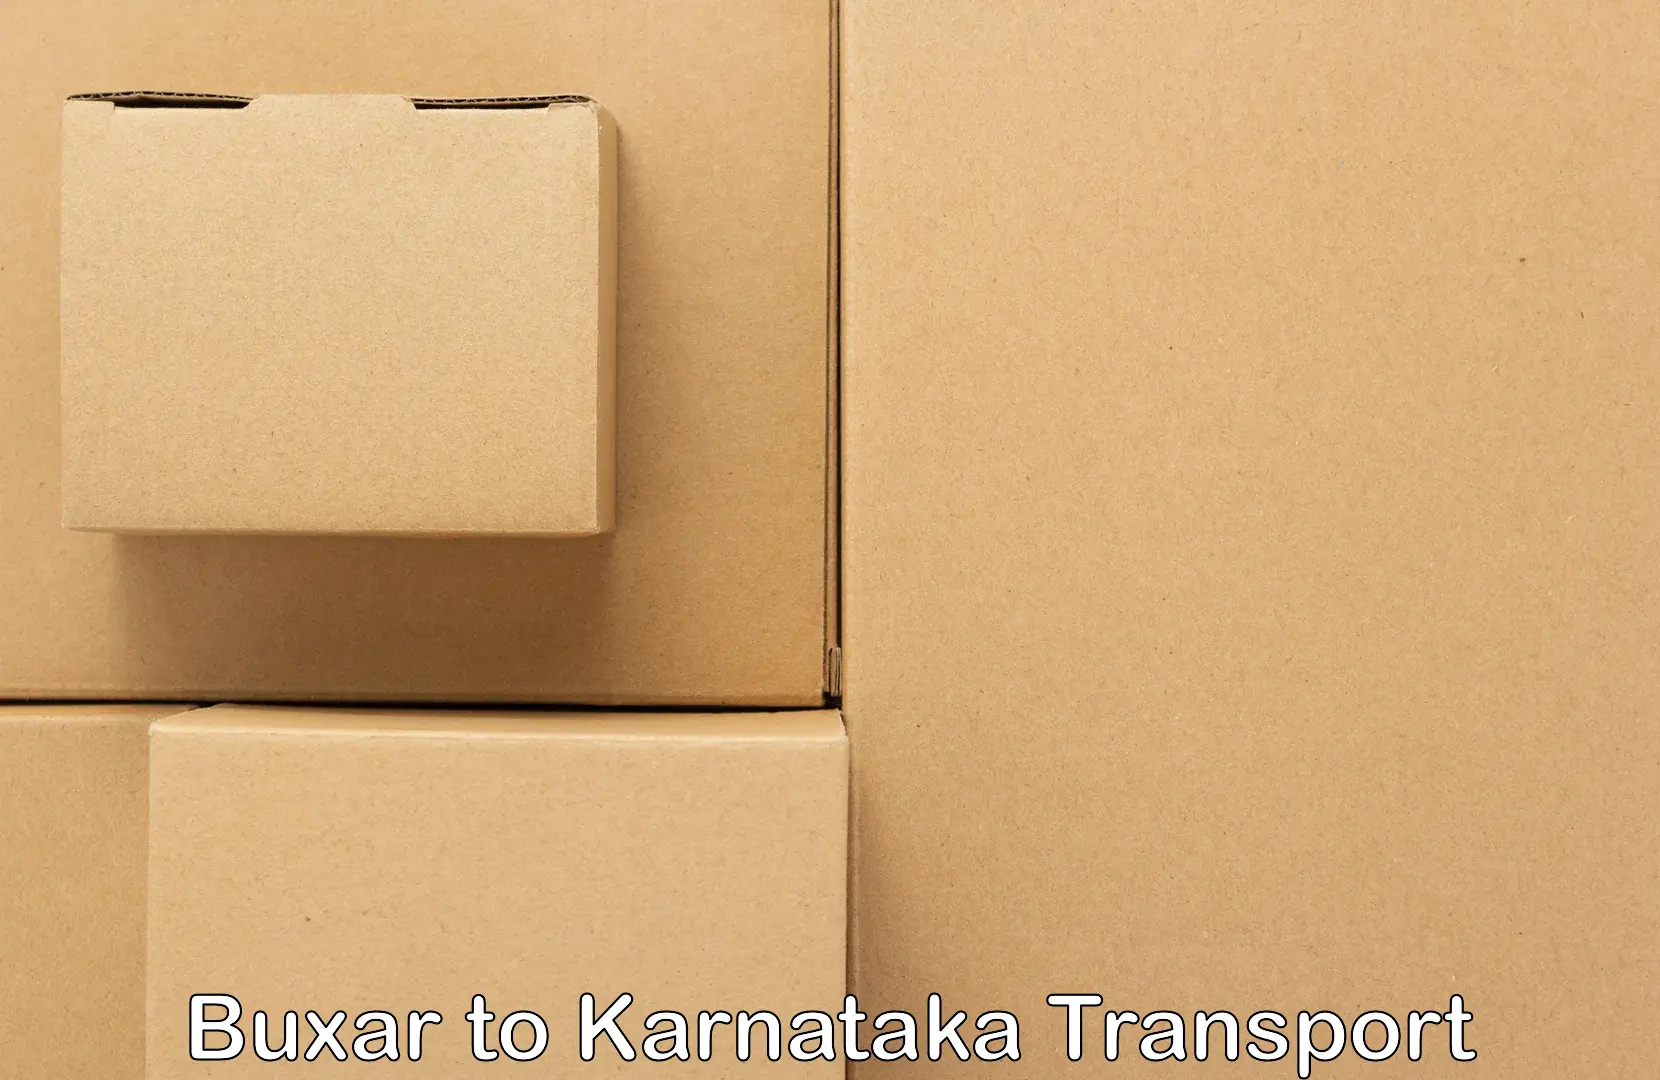 Furniture transport service Buxar to Bethamangala